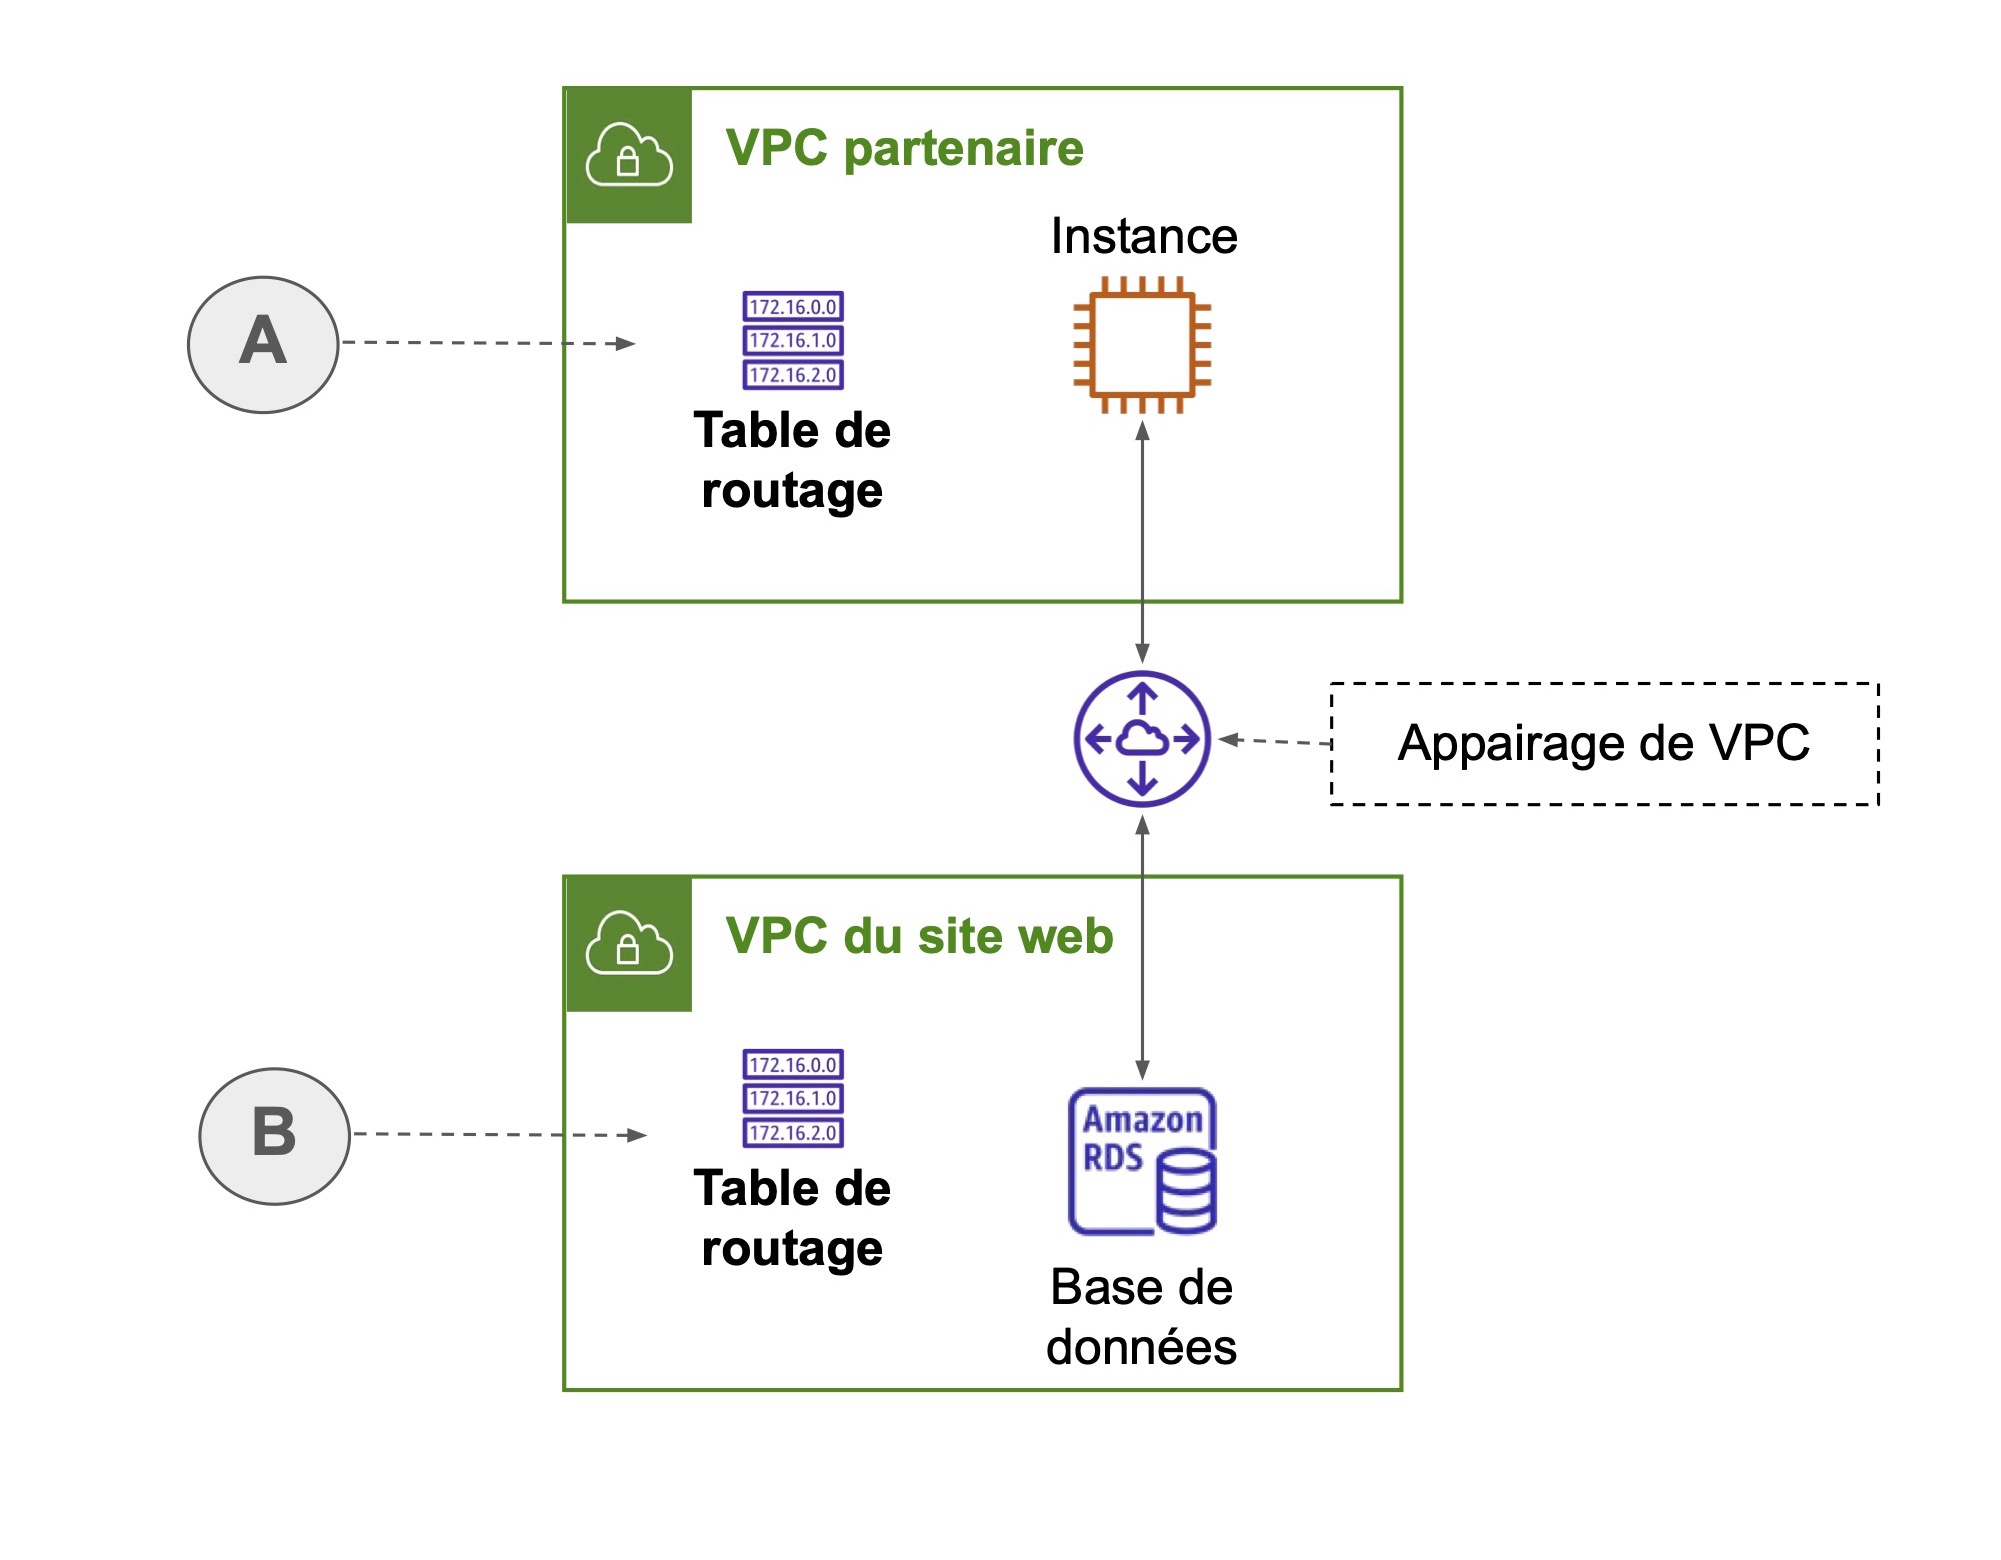 Configuration des tables de routage pour l’appairage de VPC.  A - Mettre à jour la table de routage pour diriger le trafic vers le bloc d’adresses CIDR utilisé dans le VPC du site web, via l’appairage de VPC.   B - Mettre à jour la table de routa